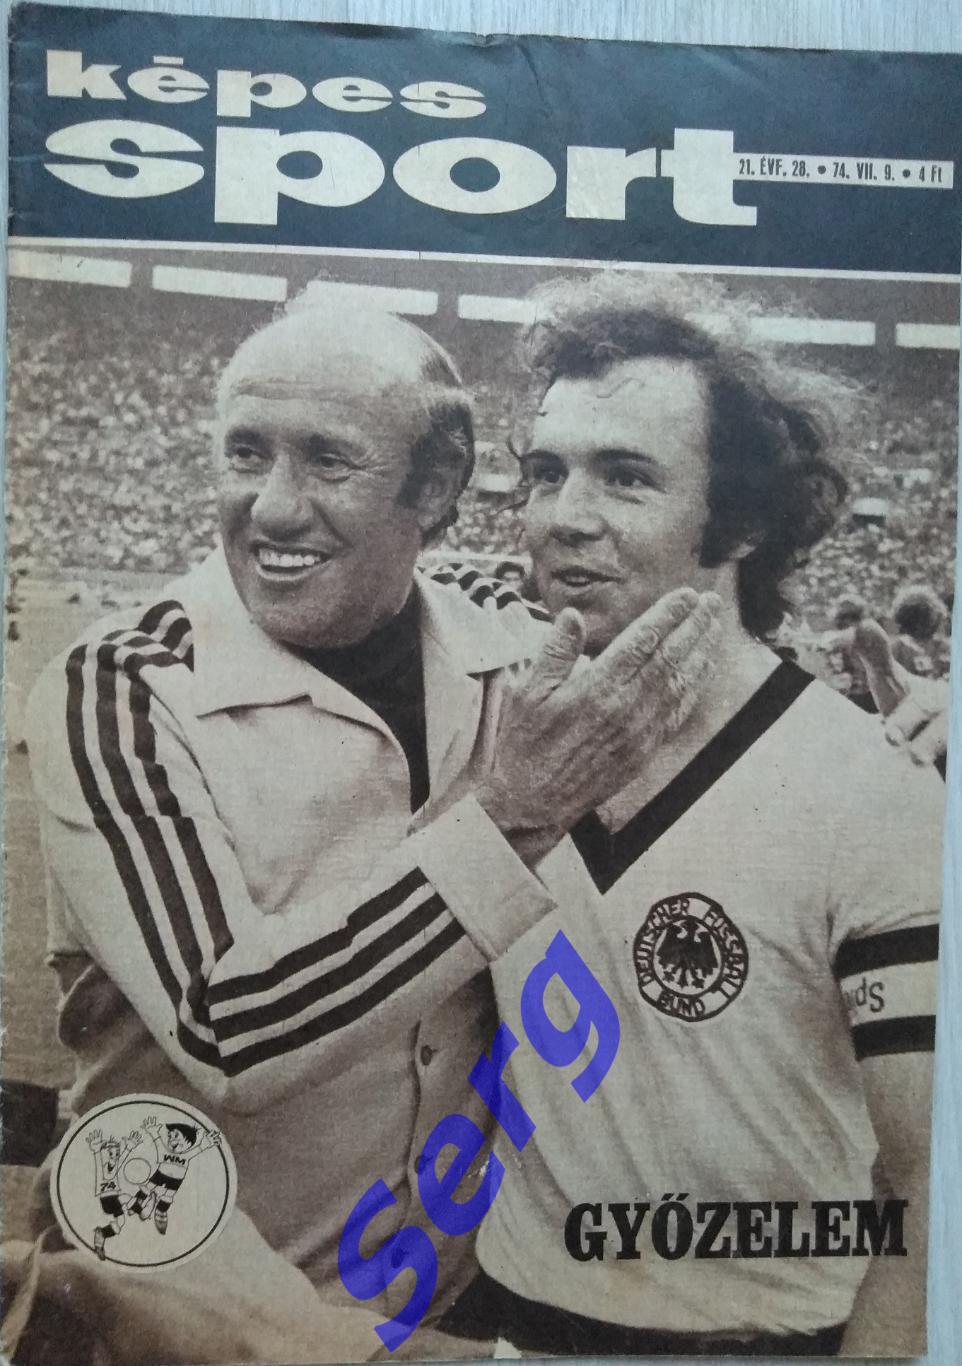 Фото из журнала Кепеш Спорт/Kepes sport 09.07.1974 год